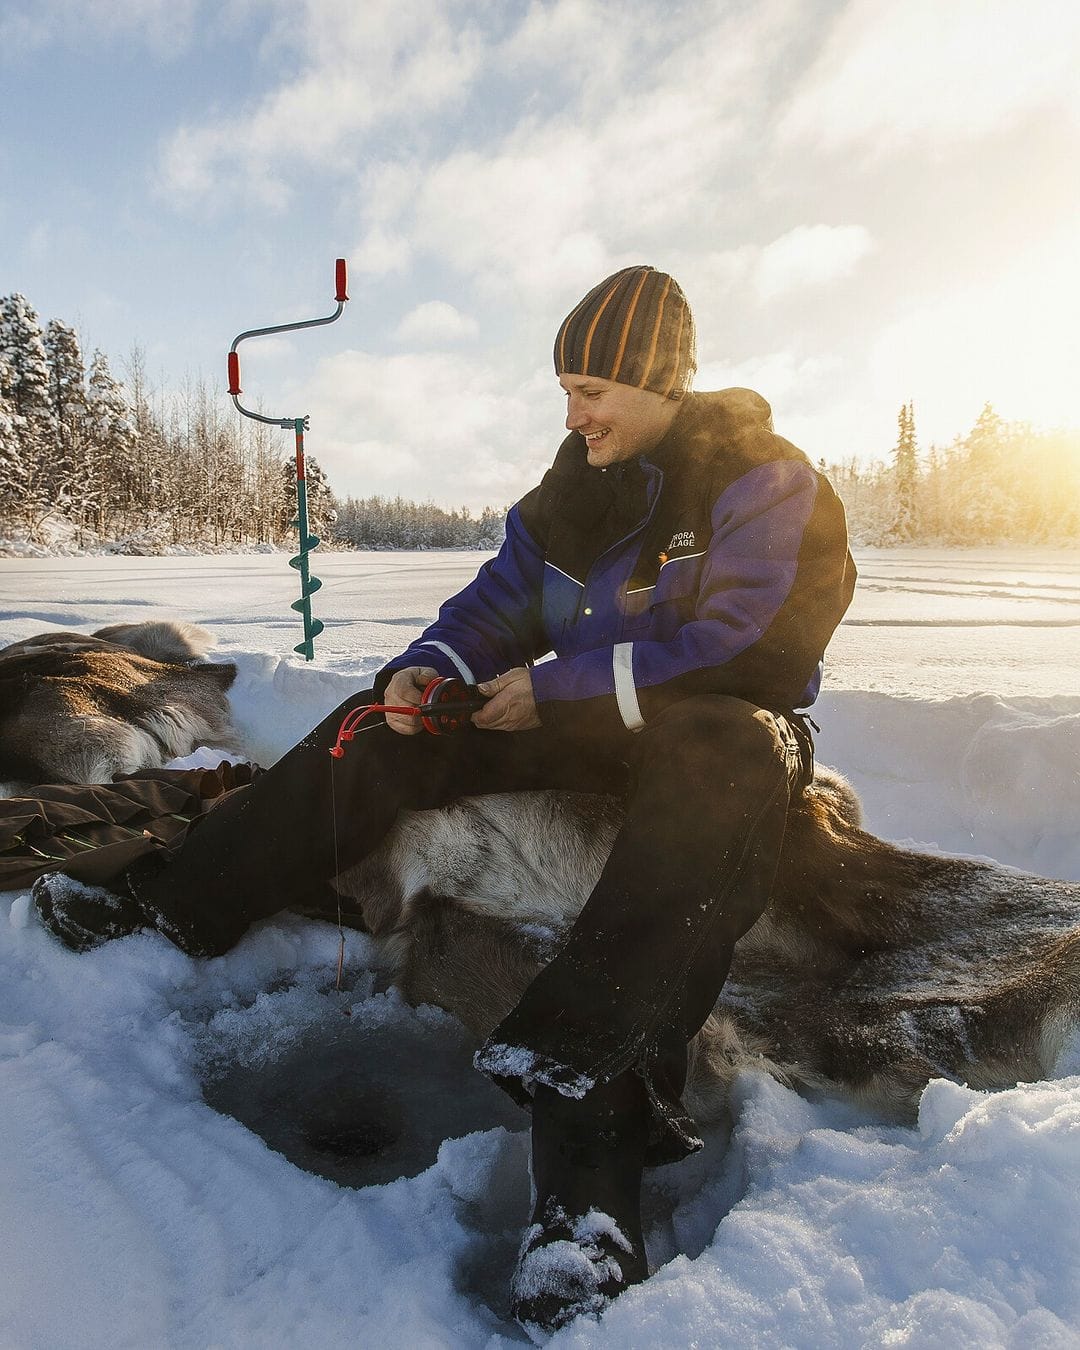 Juha ice-fishing